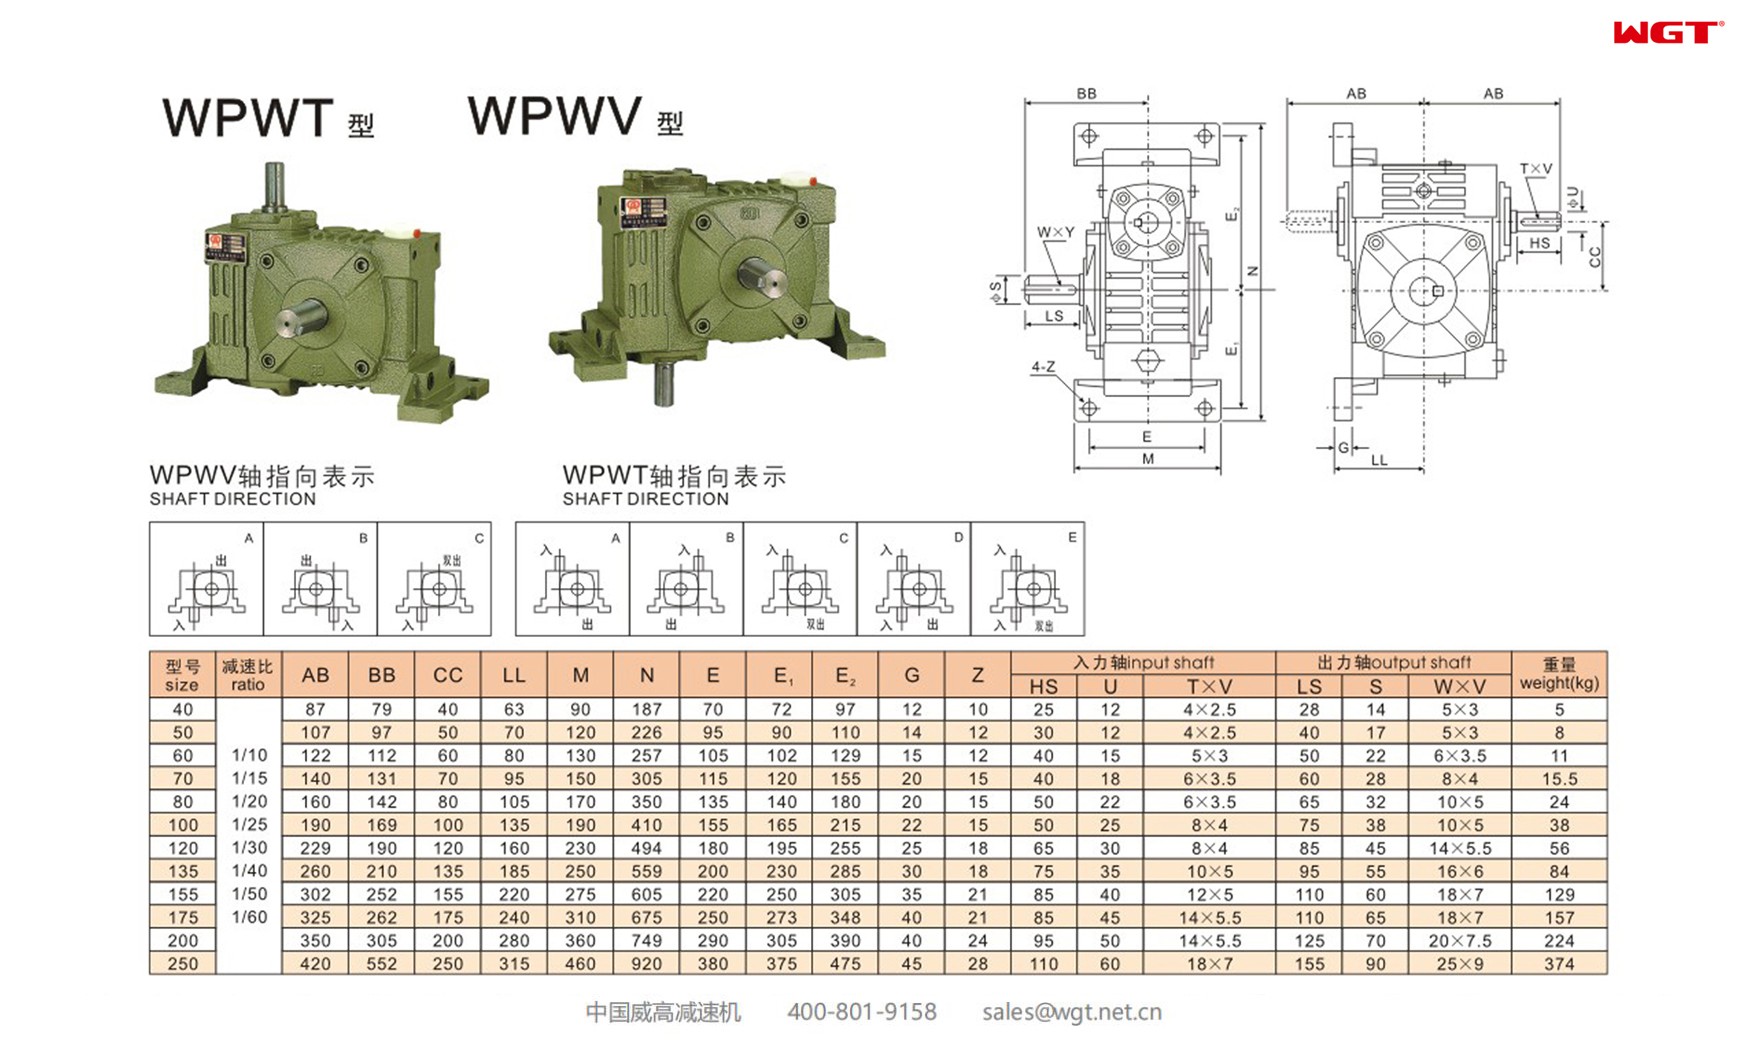 WPWT100 worm gear reducer universal speed reducer